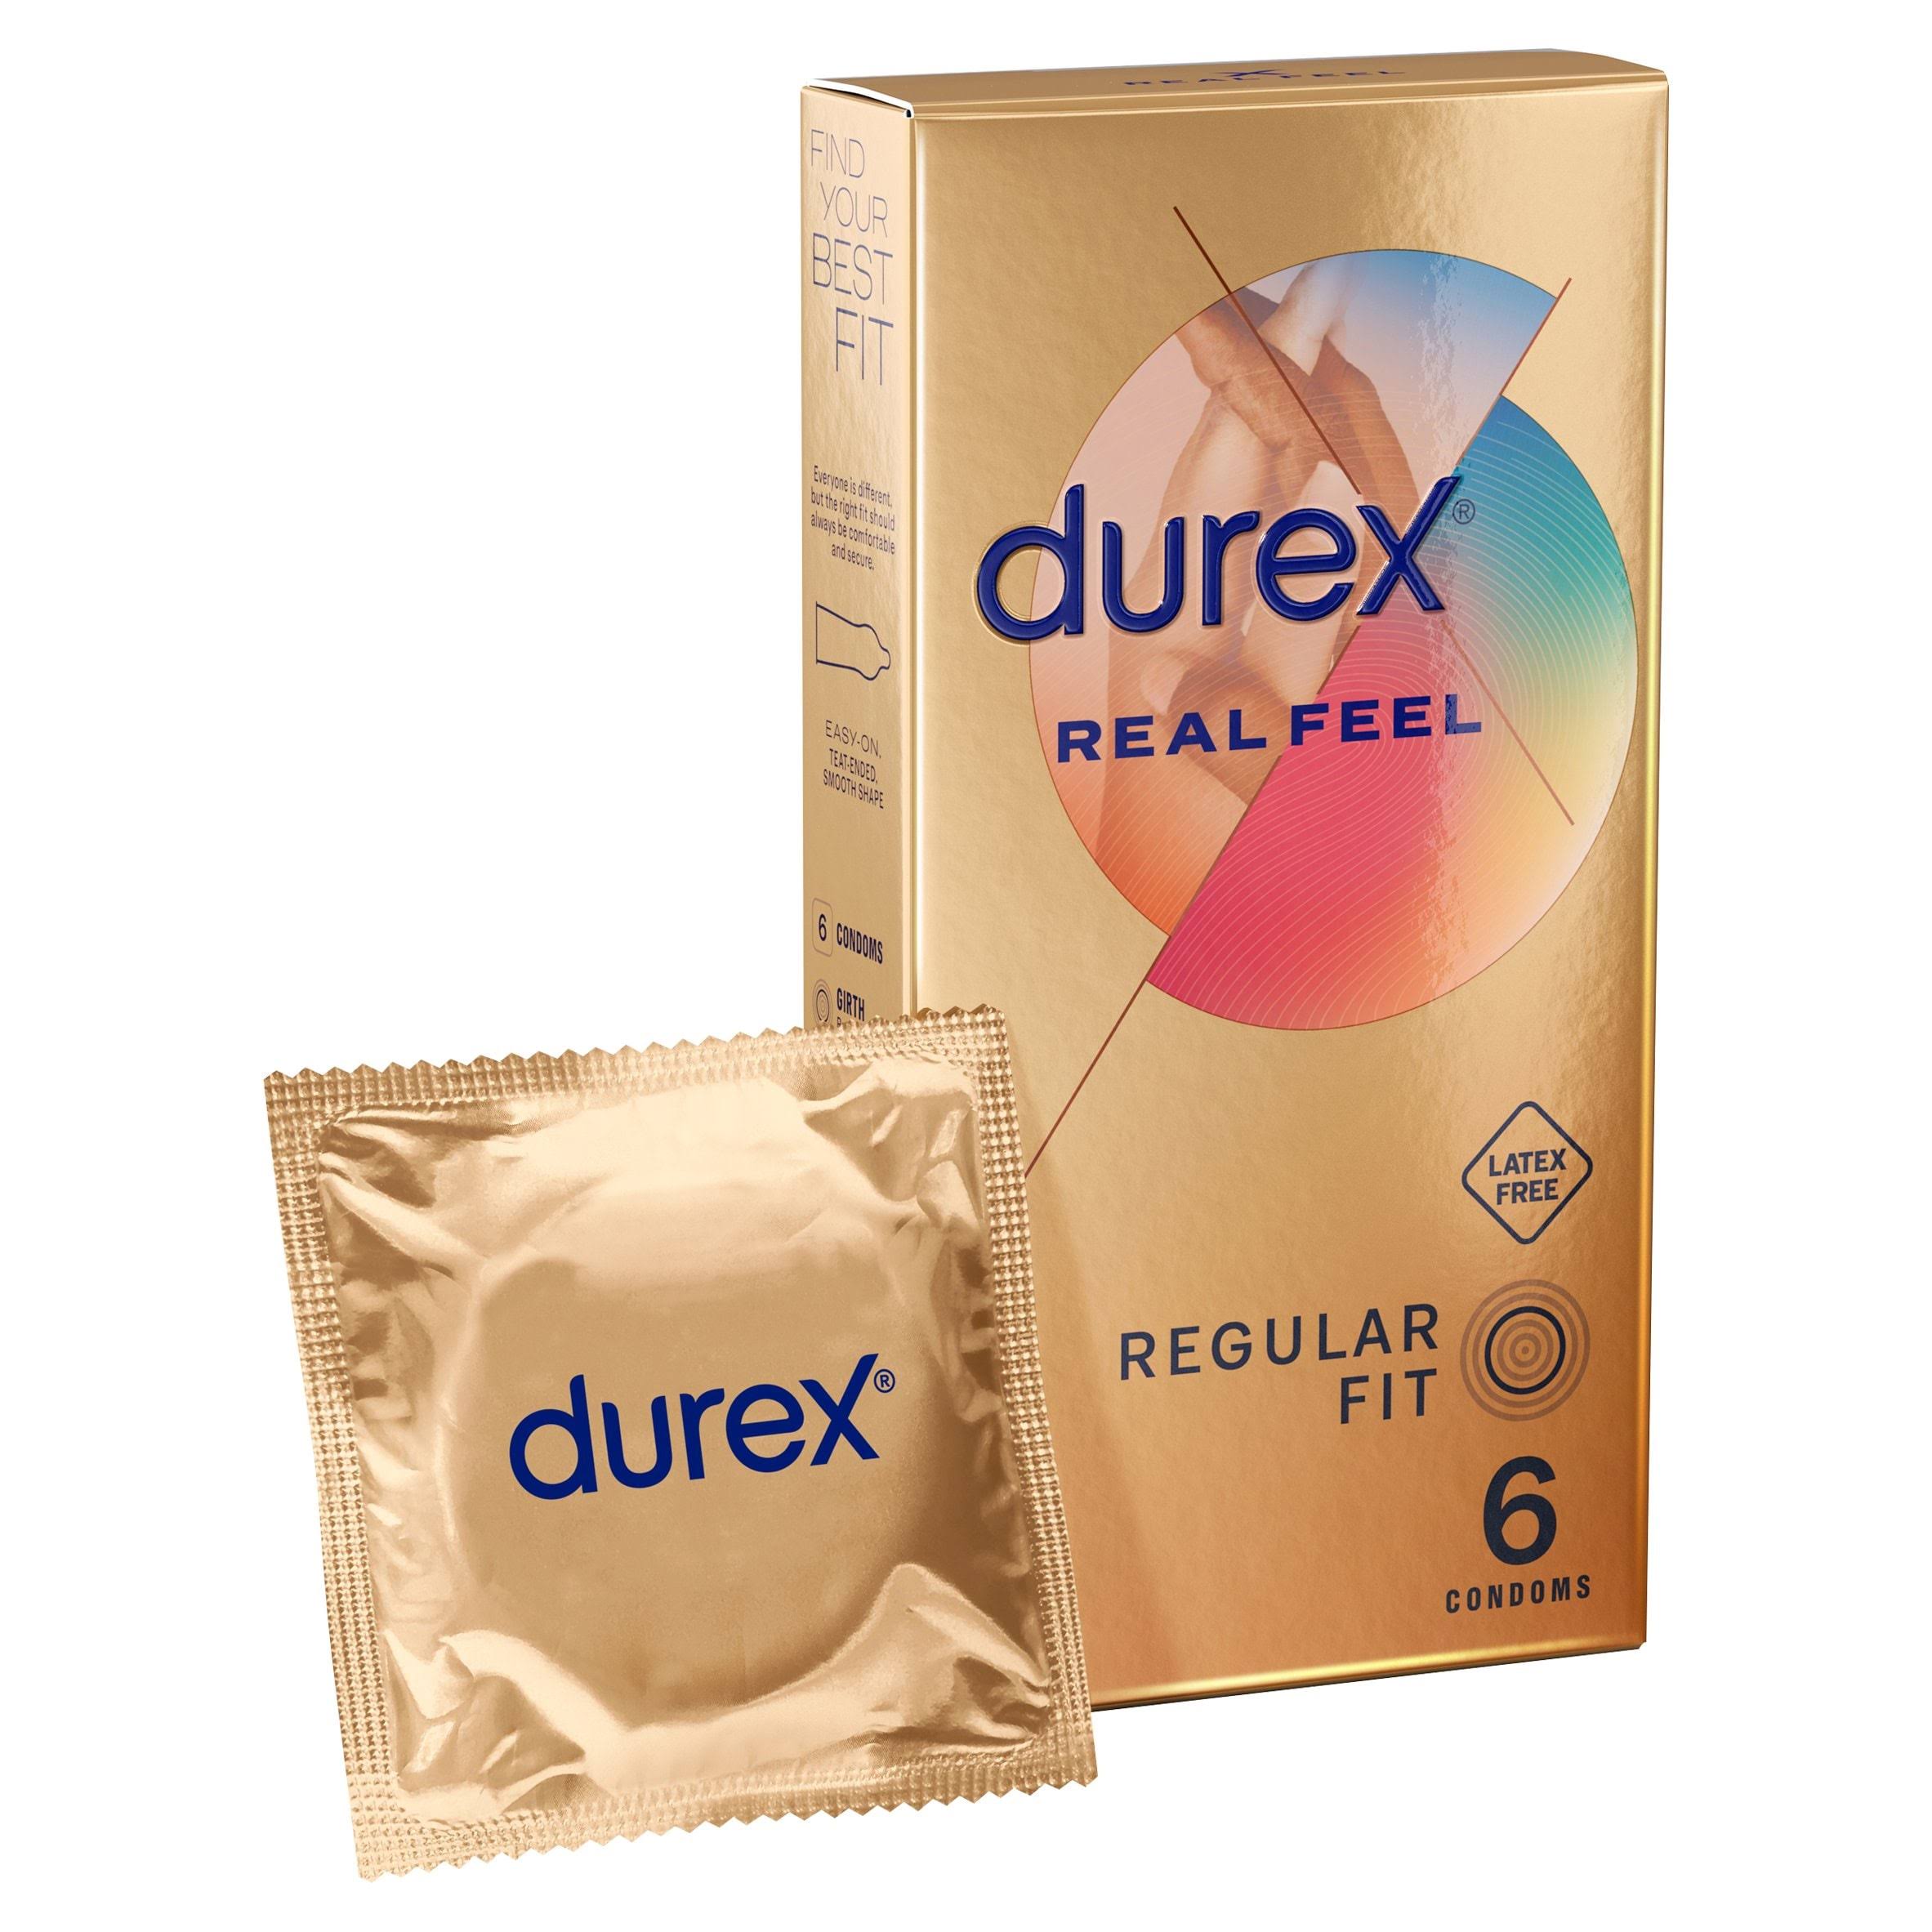 Durex Real Feel Condoms 6's